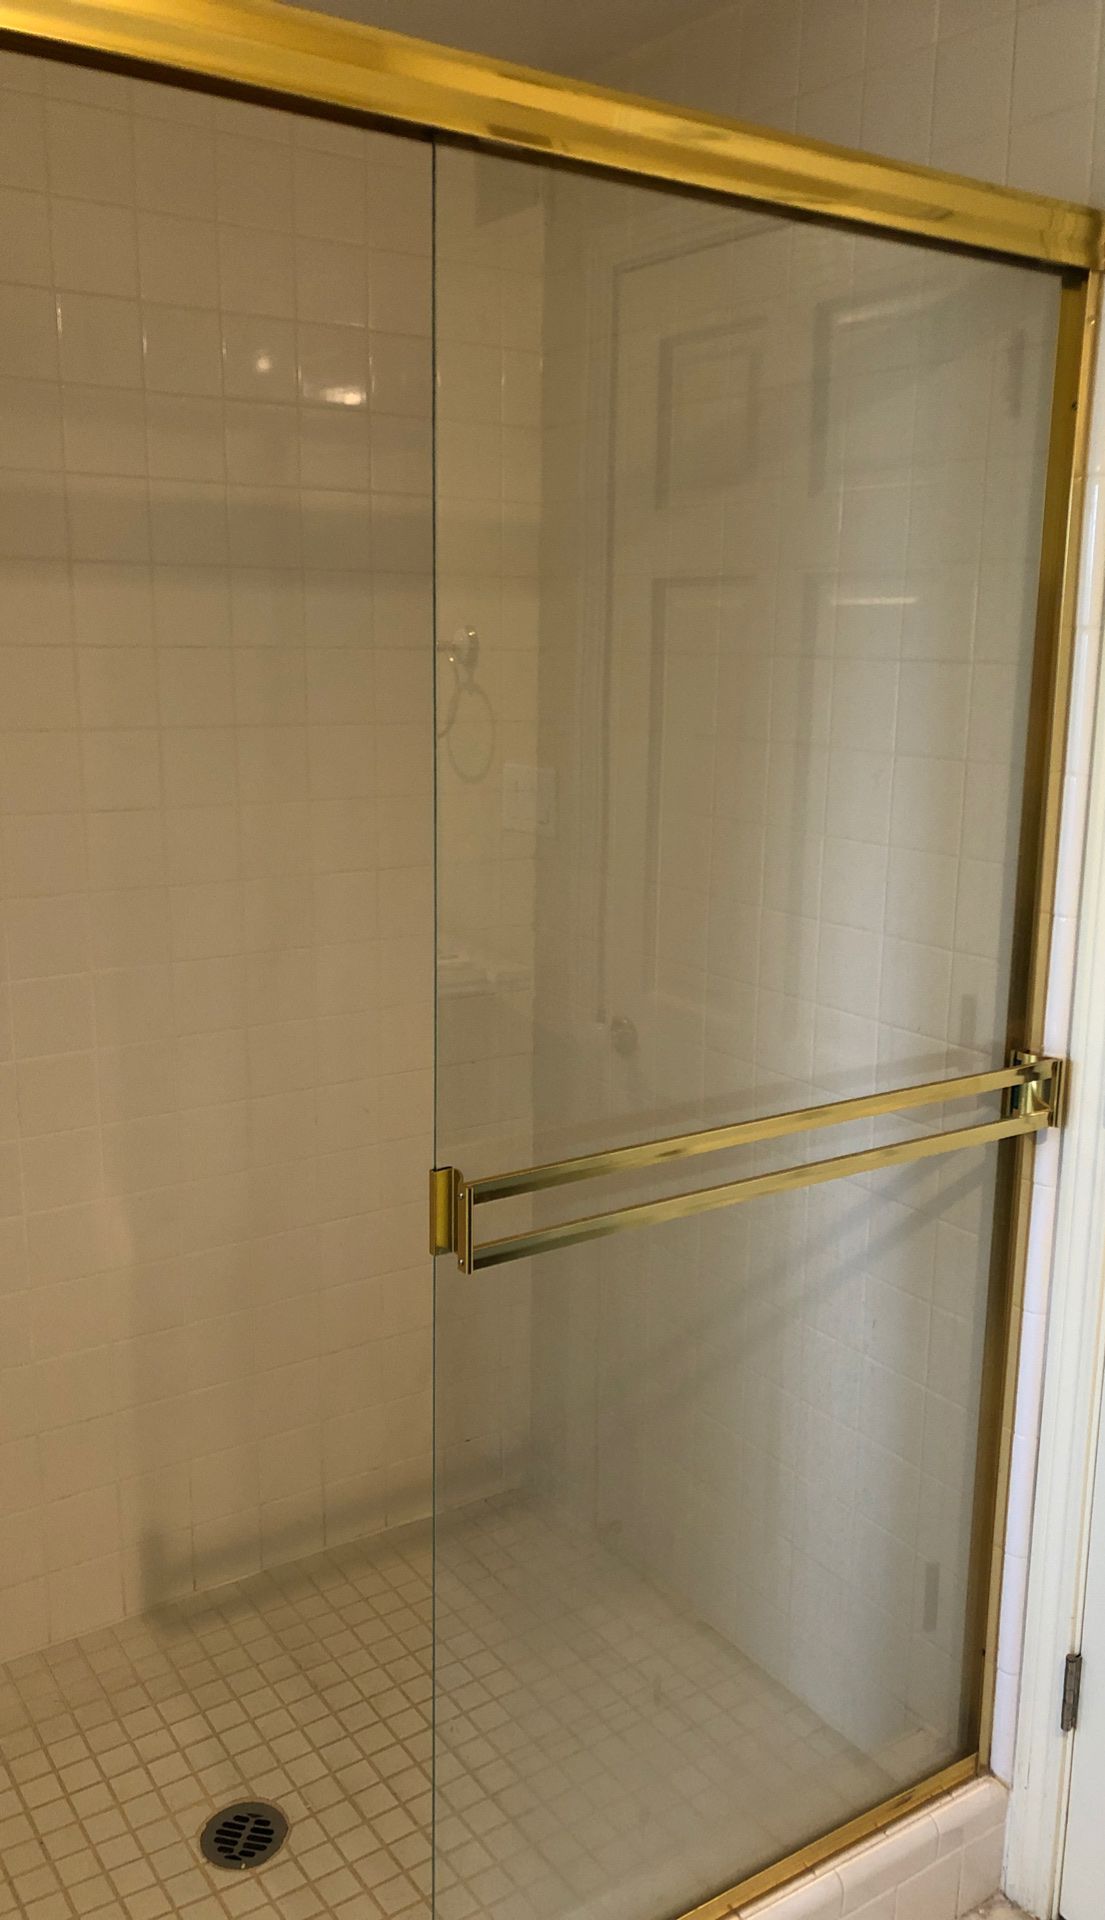 Sliding Shower door